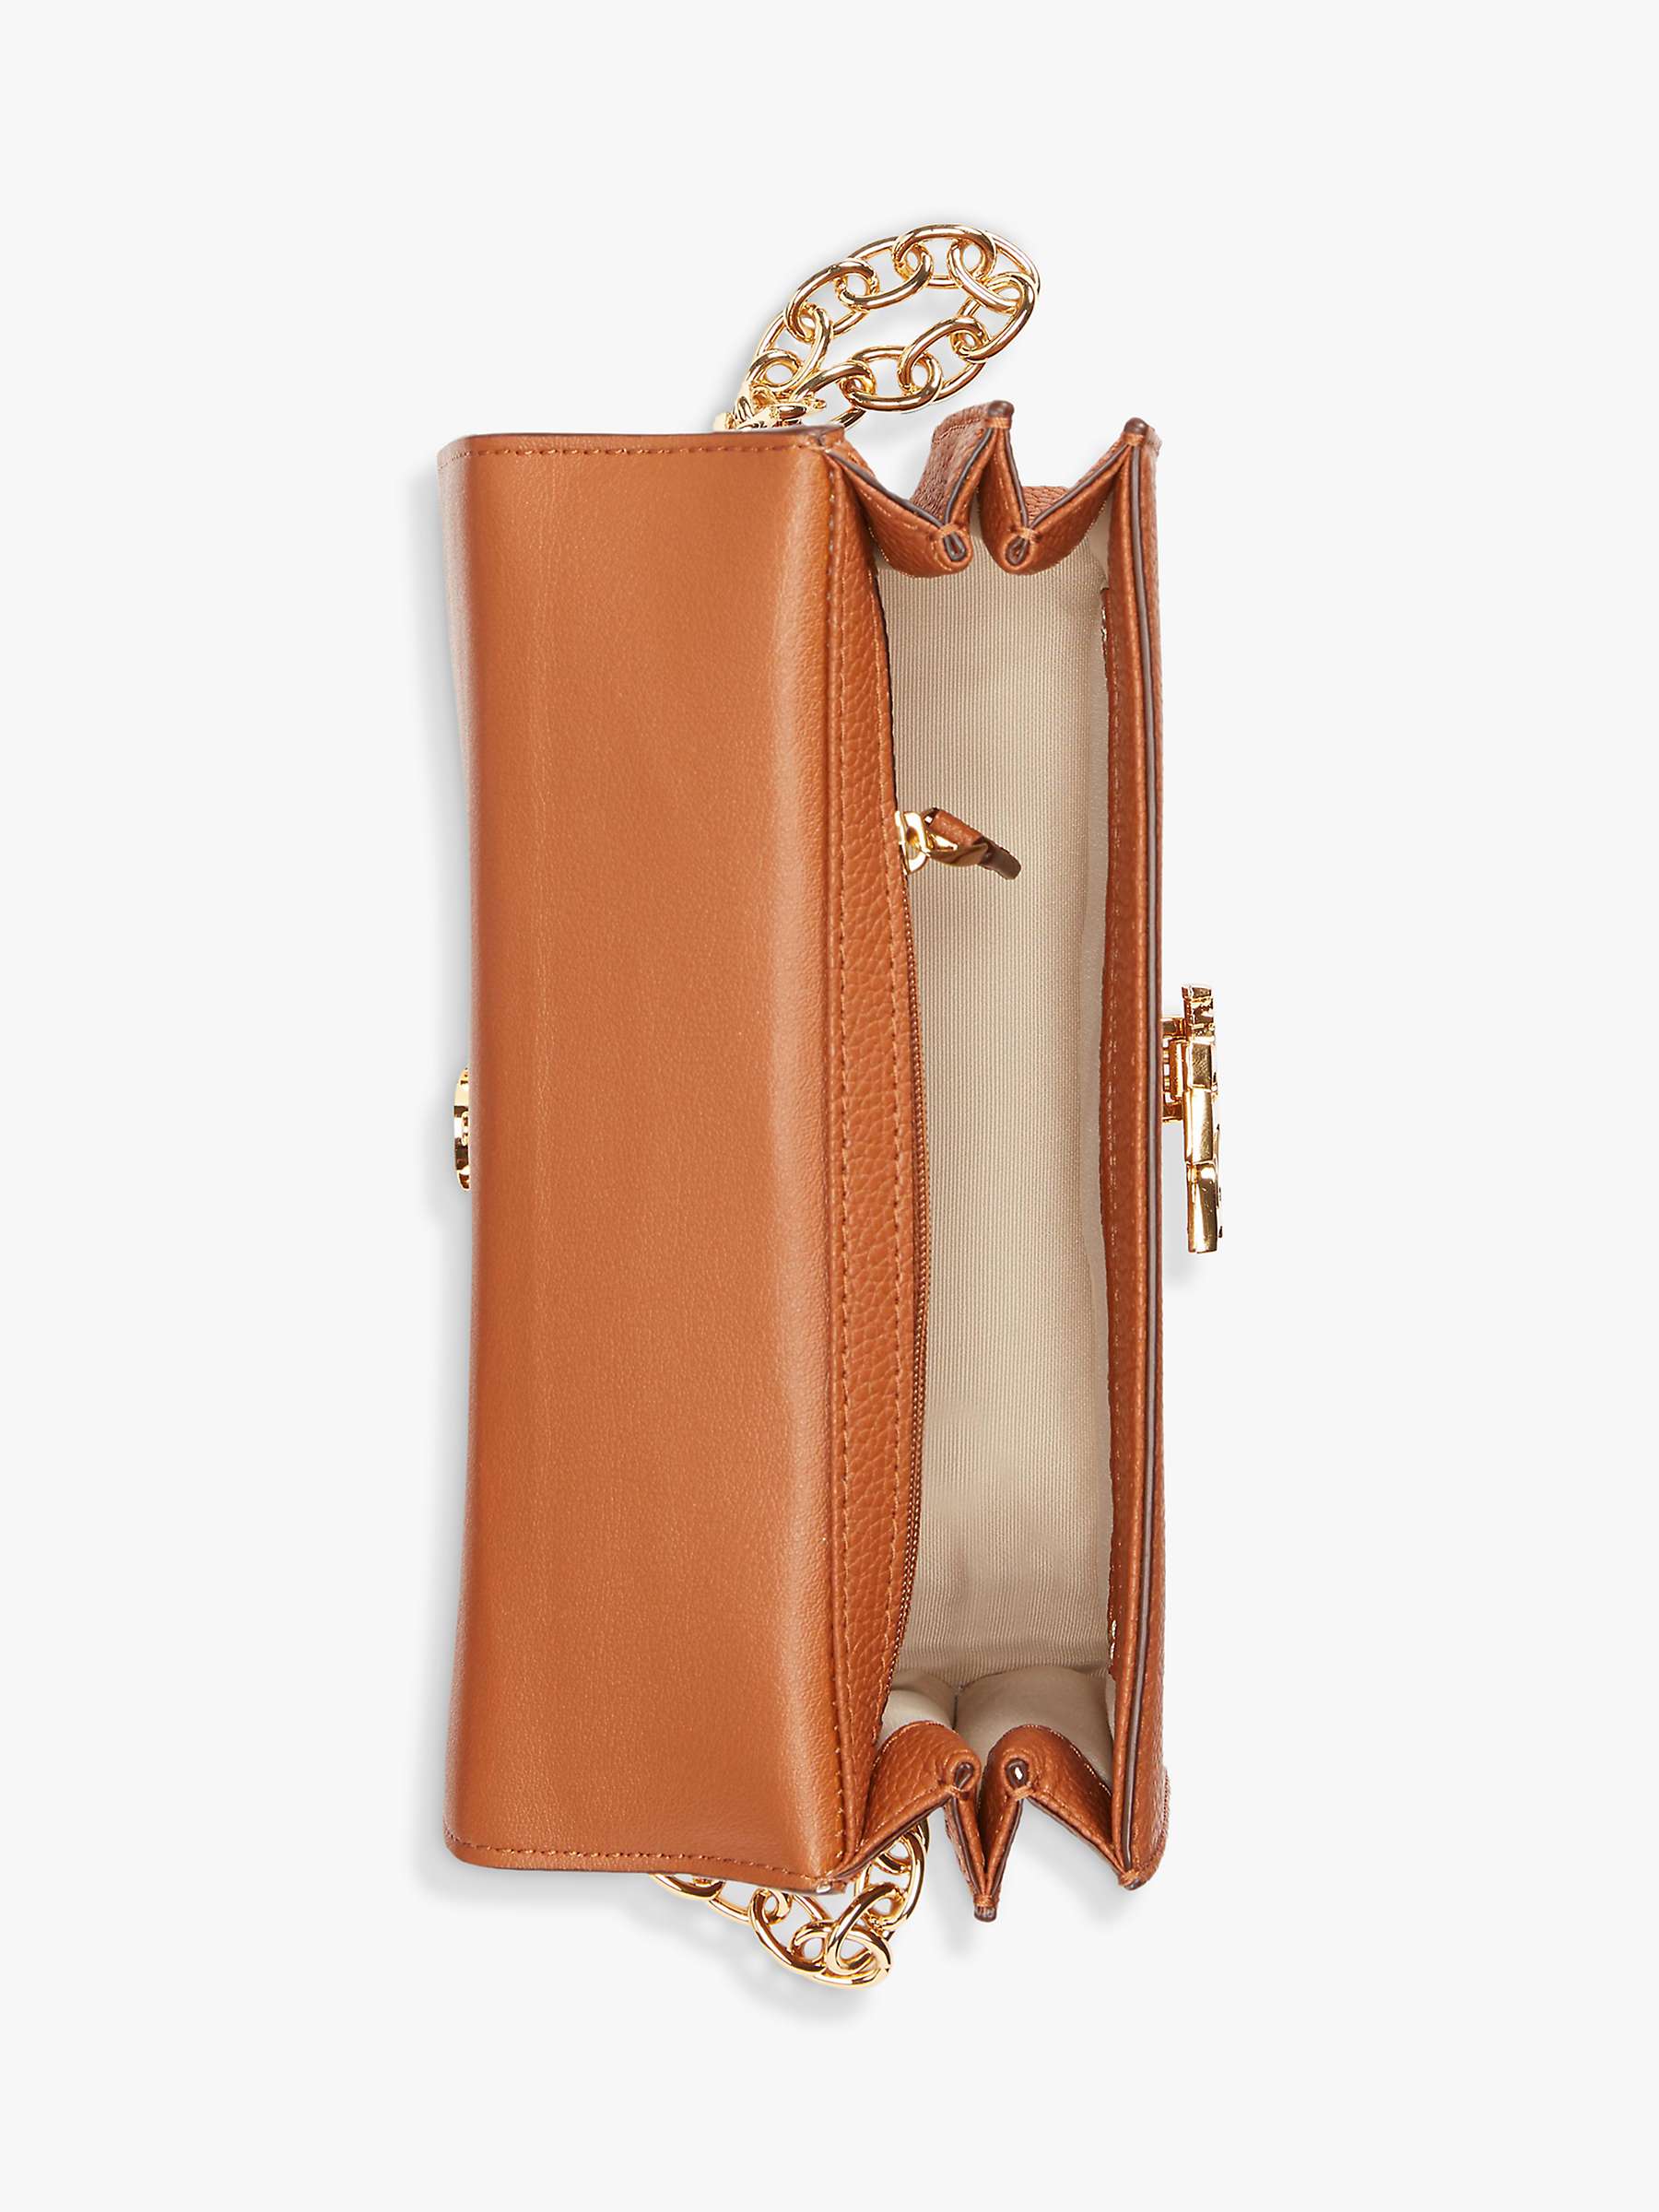 Buy Lauren Ralph Lauren Madison 22 Medium Leather Cross Body Bag Online at johnlewis.com